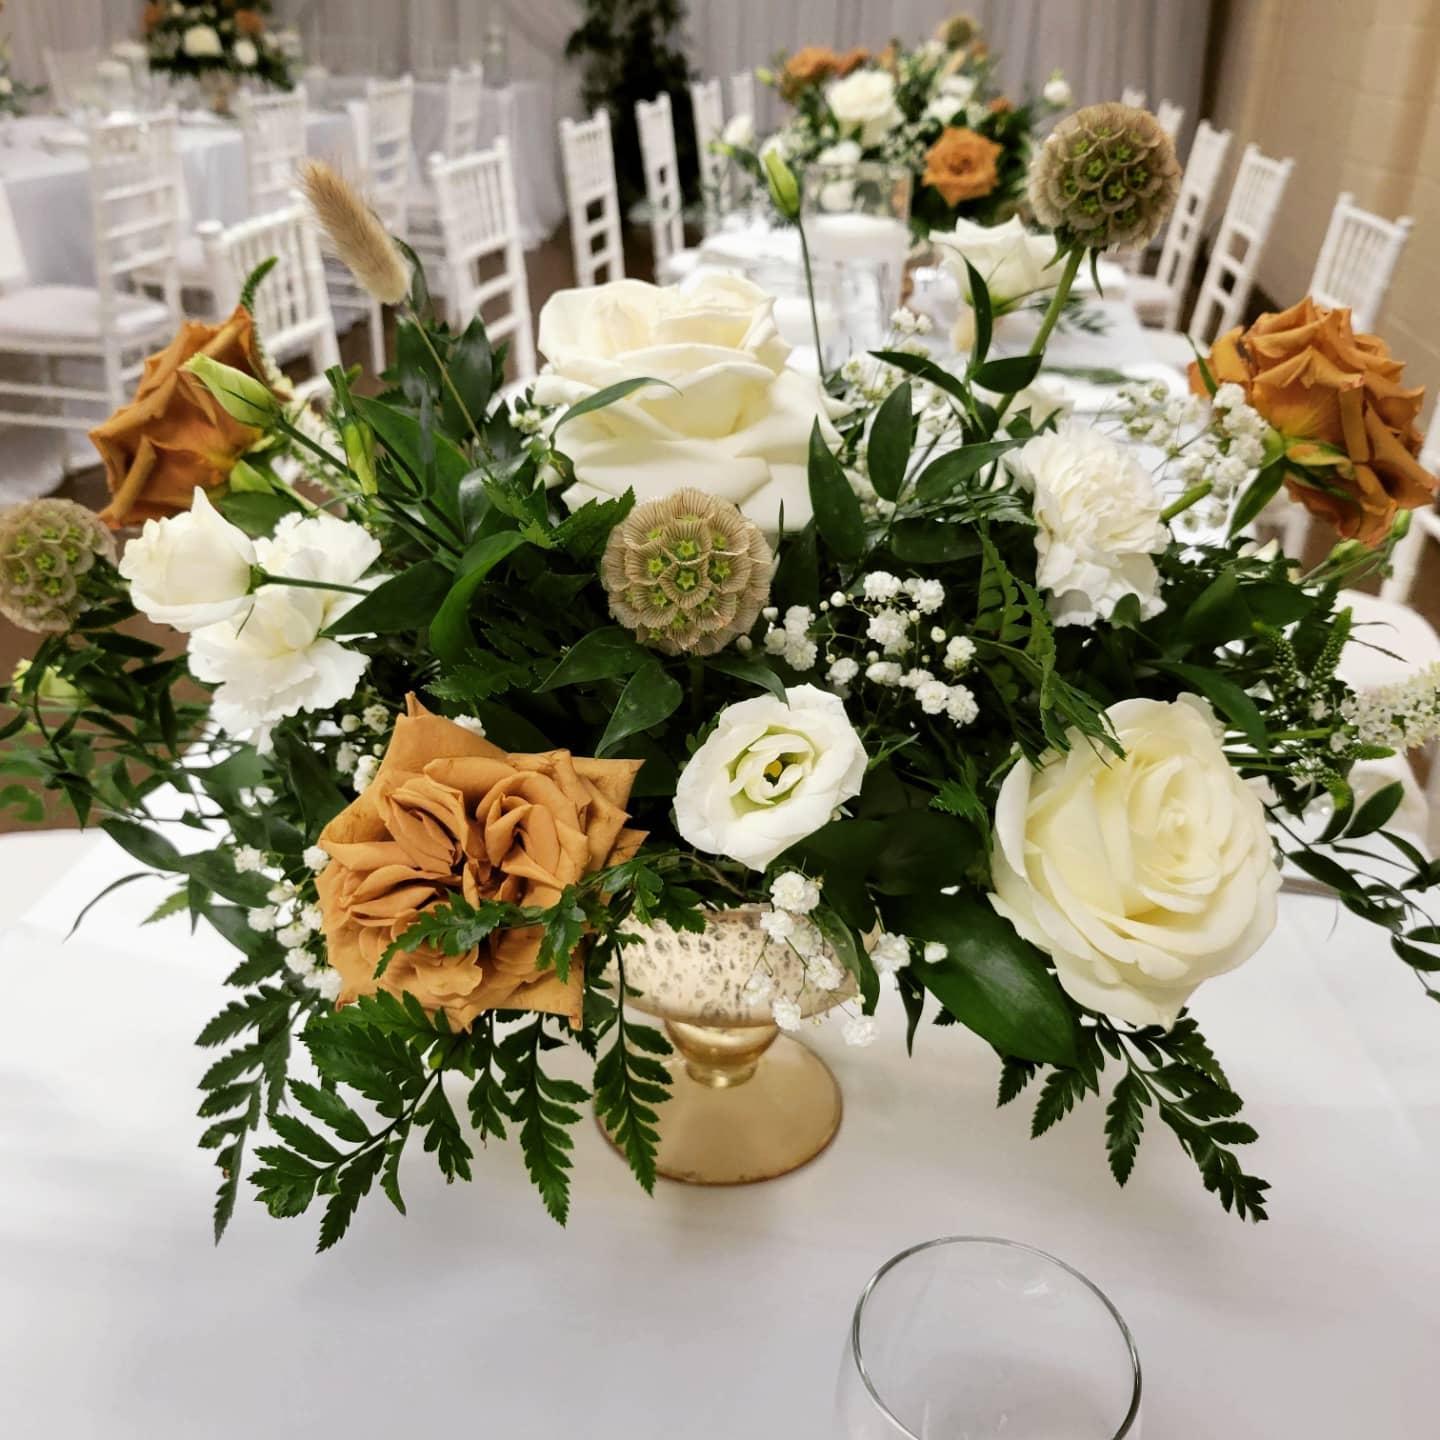 White Rose Dinner Table